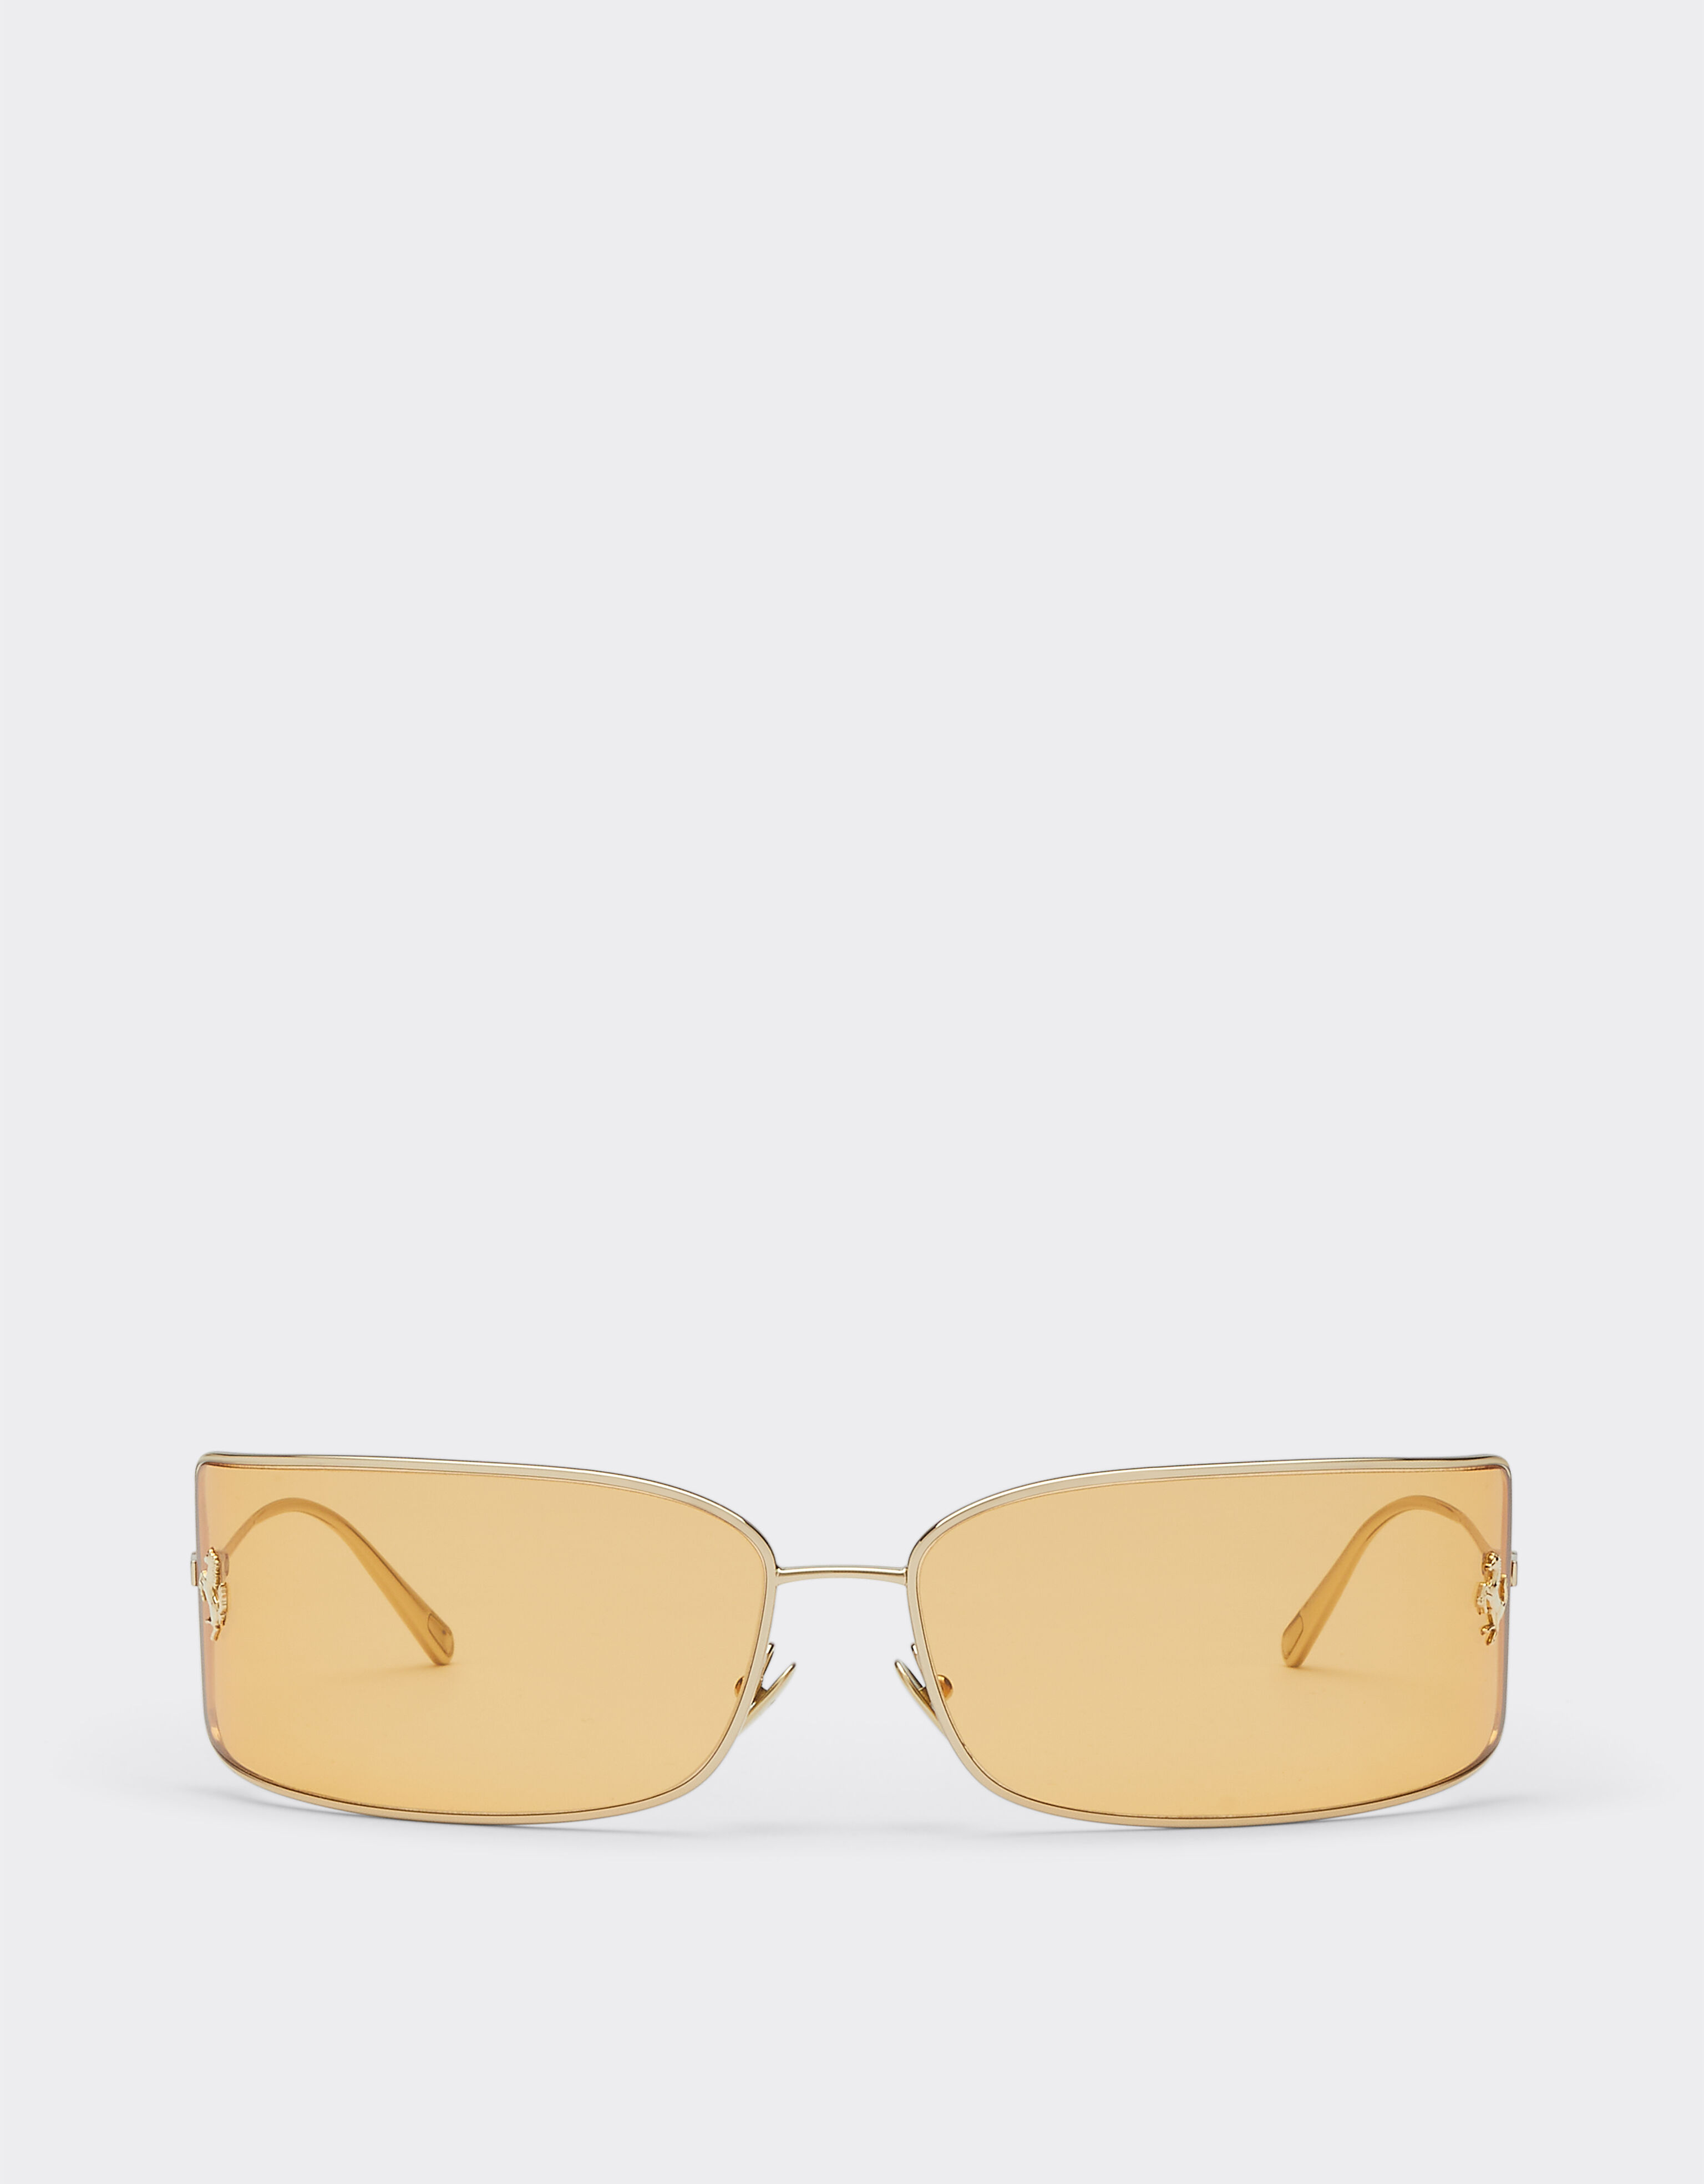 Ferrari Ferrari shield sunglasses with gold lenses Silver F1247f